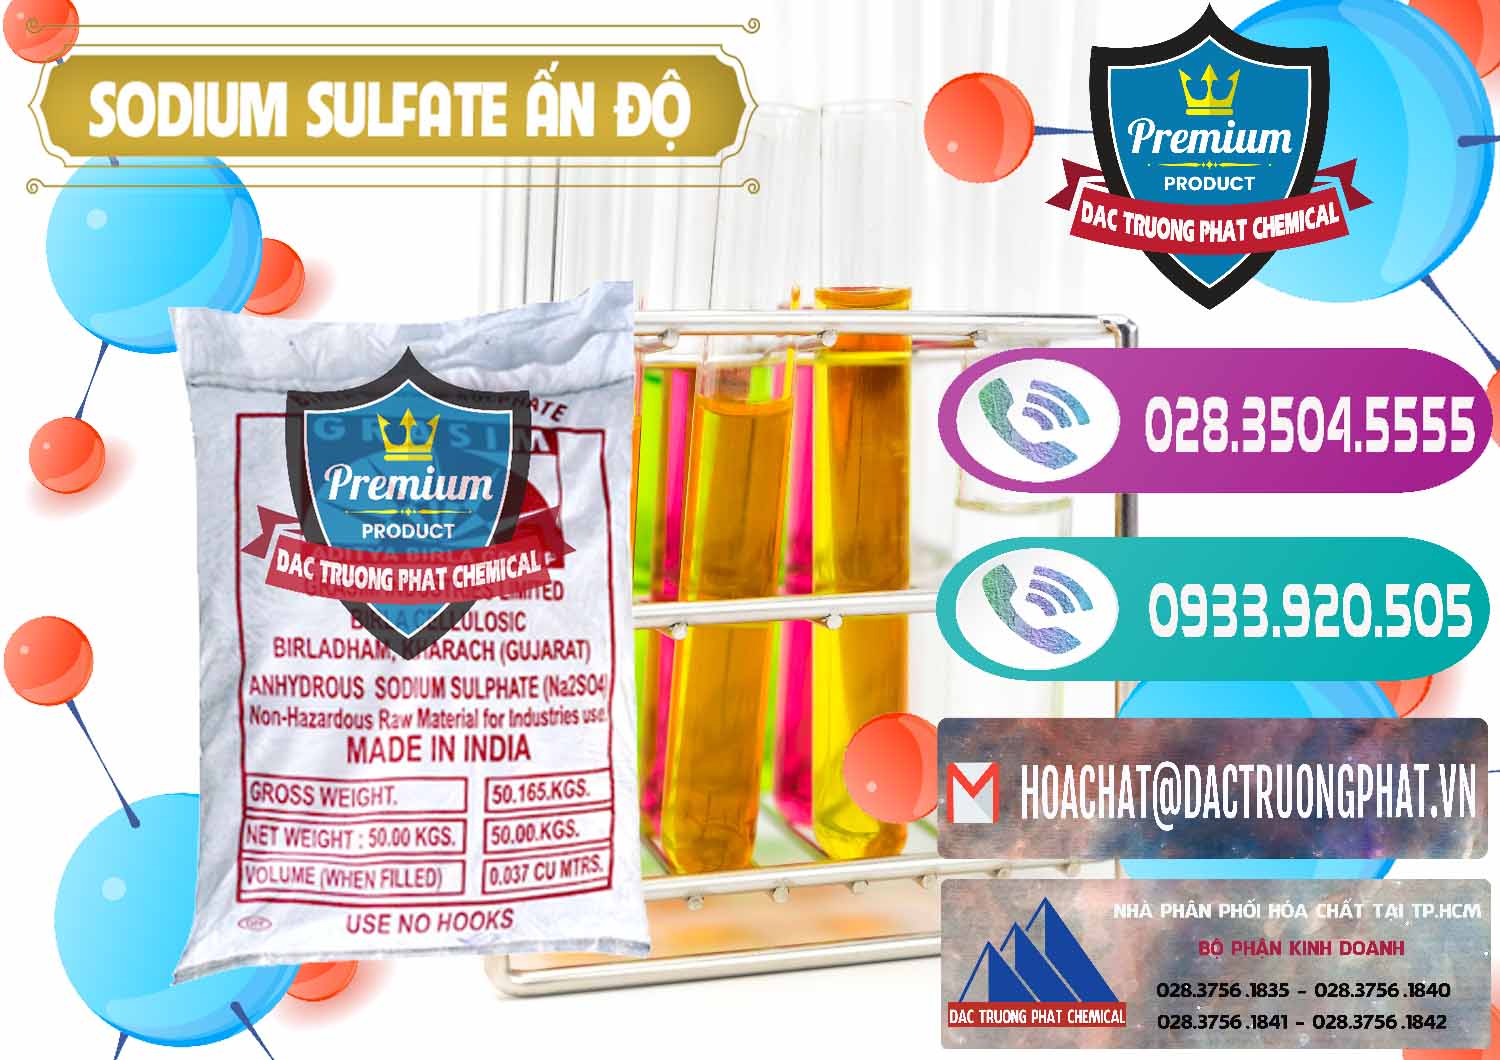 Chuyên bán - phân phối Sodium Sulphate - Muối Sunfat Na2SO4 Aditya Birla Grasim Ấn Độ India - 0462 - Cty phân phối - cung ứng hóa chất tại TP.HCM - hoachatxulynuoc.com